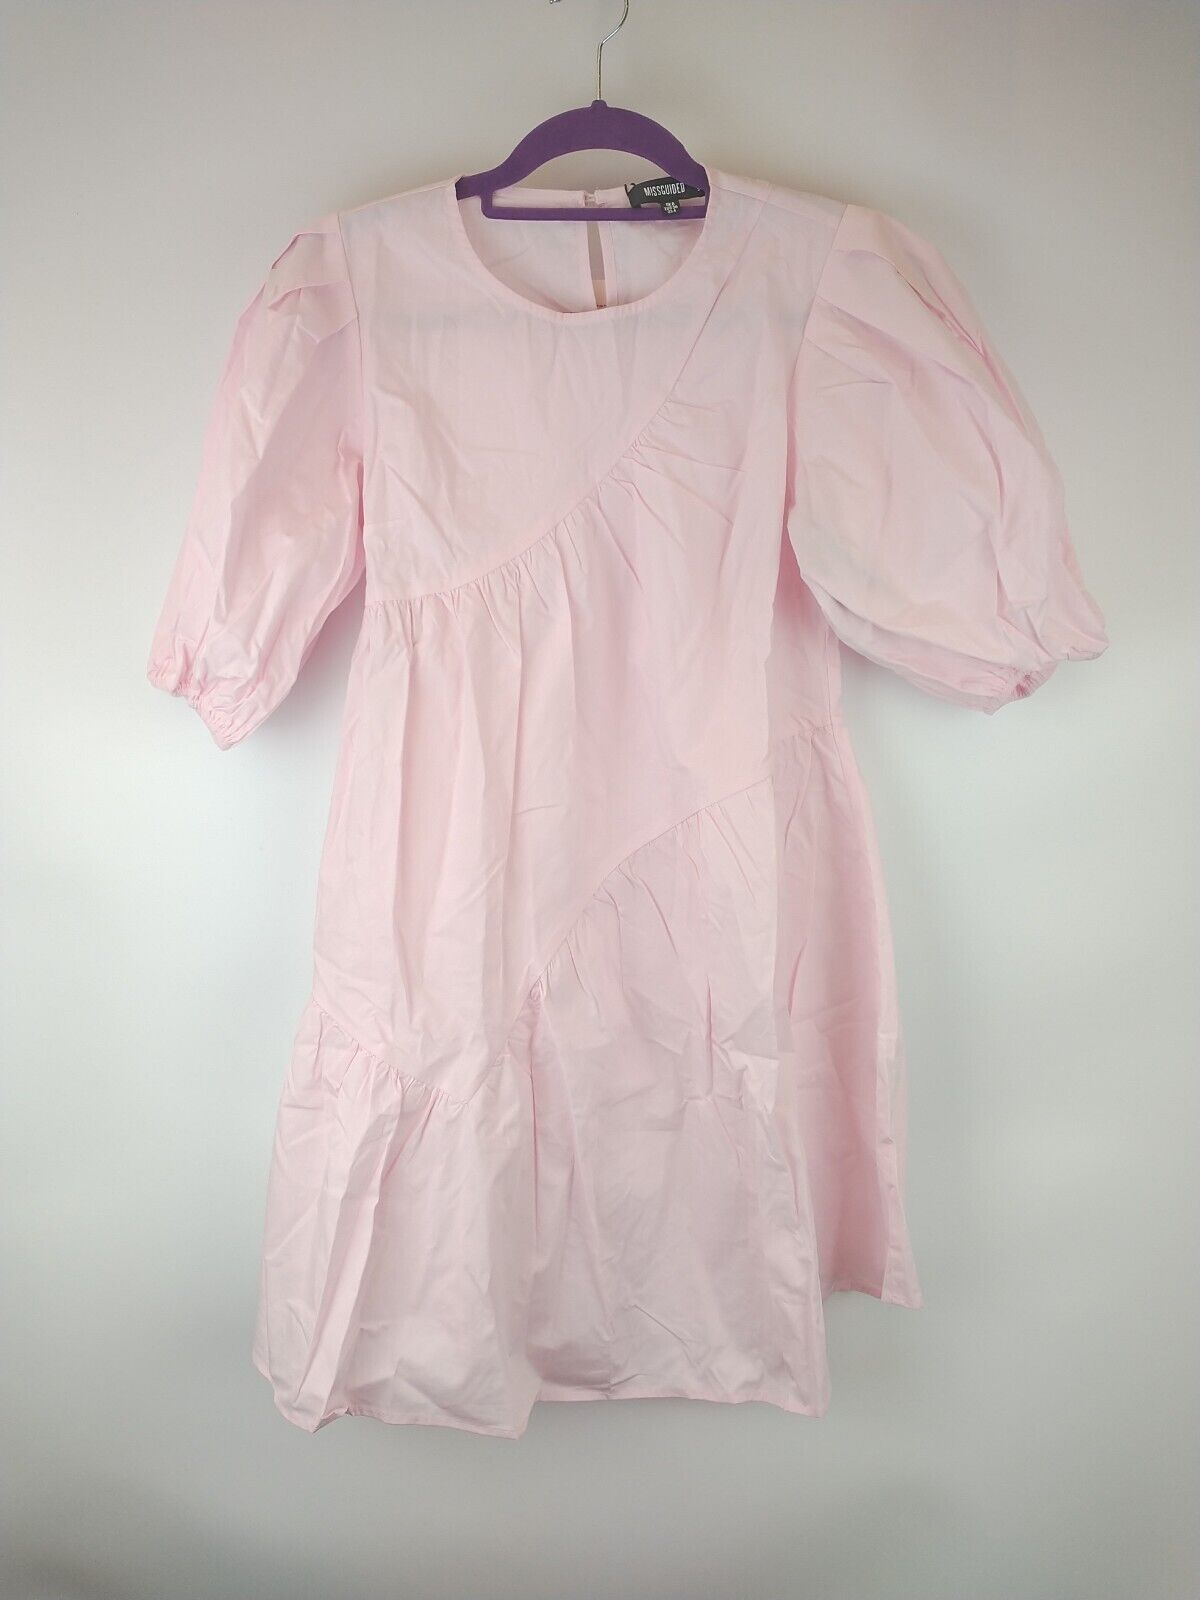 Missguided Frill Smock Pink Dress. UK Size 12 ****Ref V129